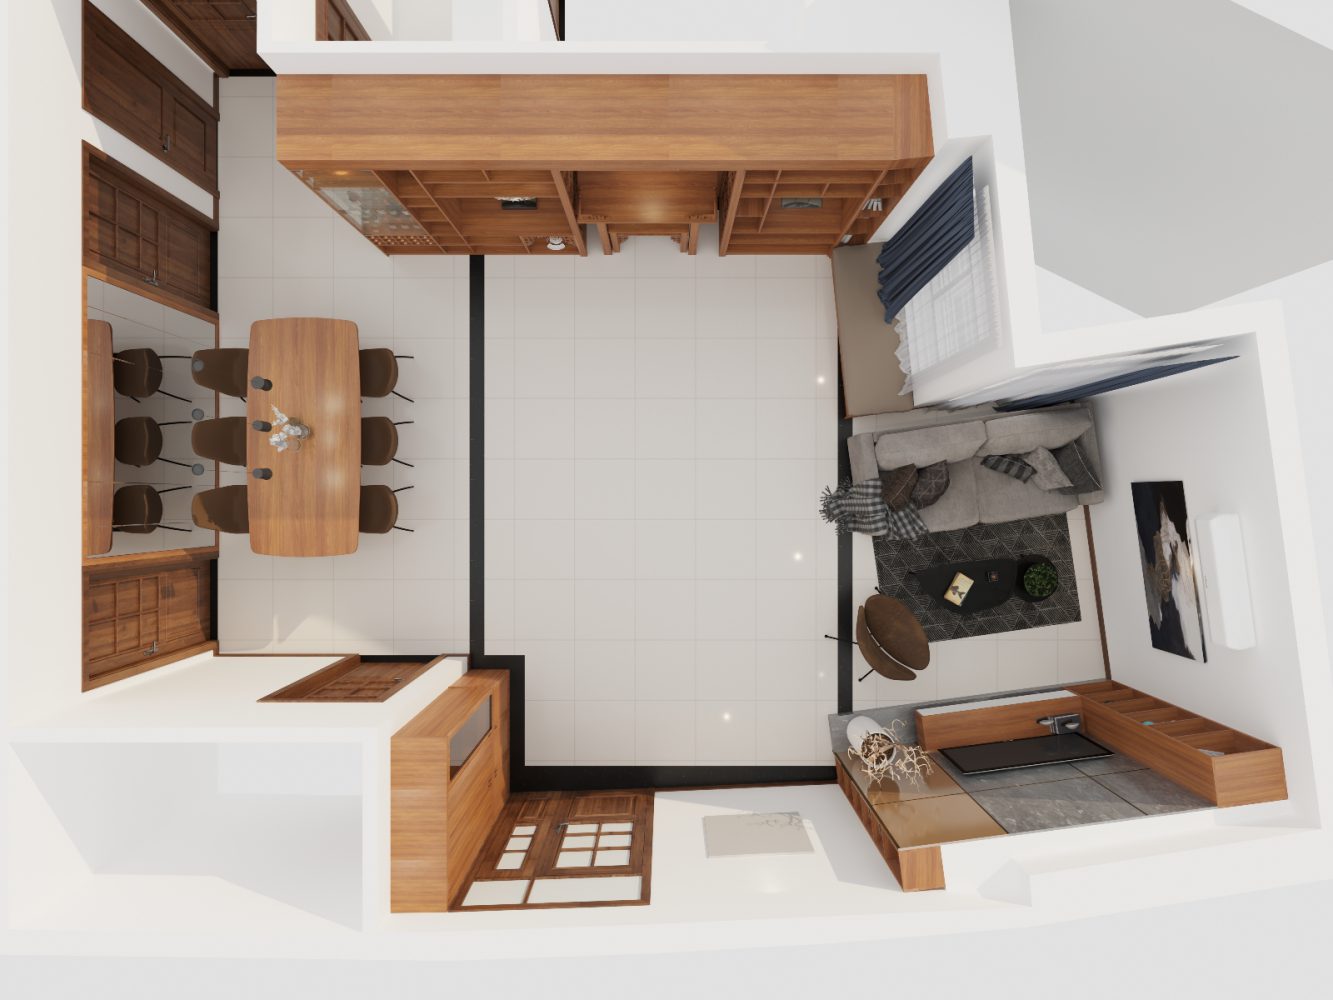 Thiết kế nội thất căn hộ 3 phòng ngủ hiện đại và khoa học